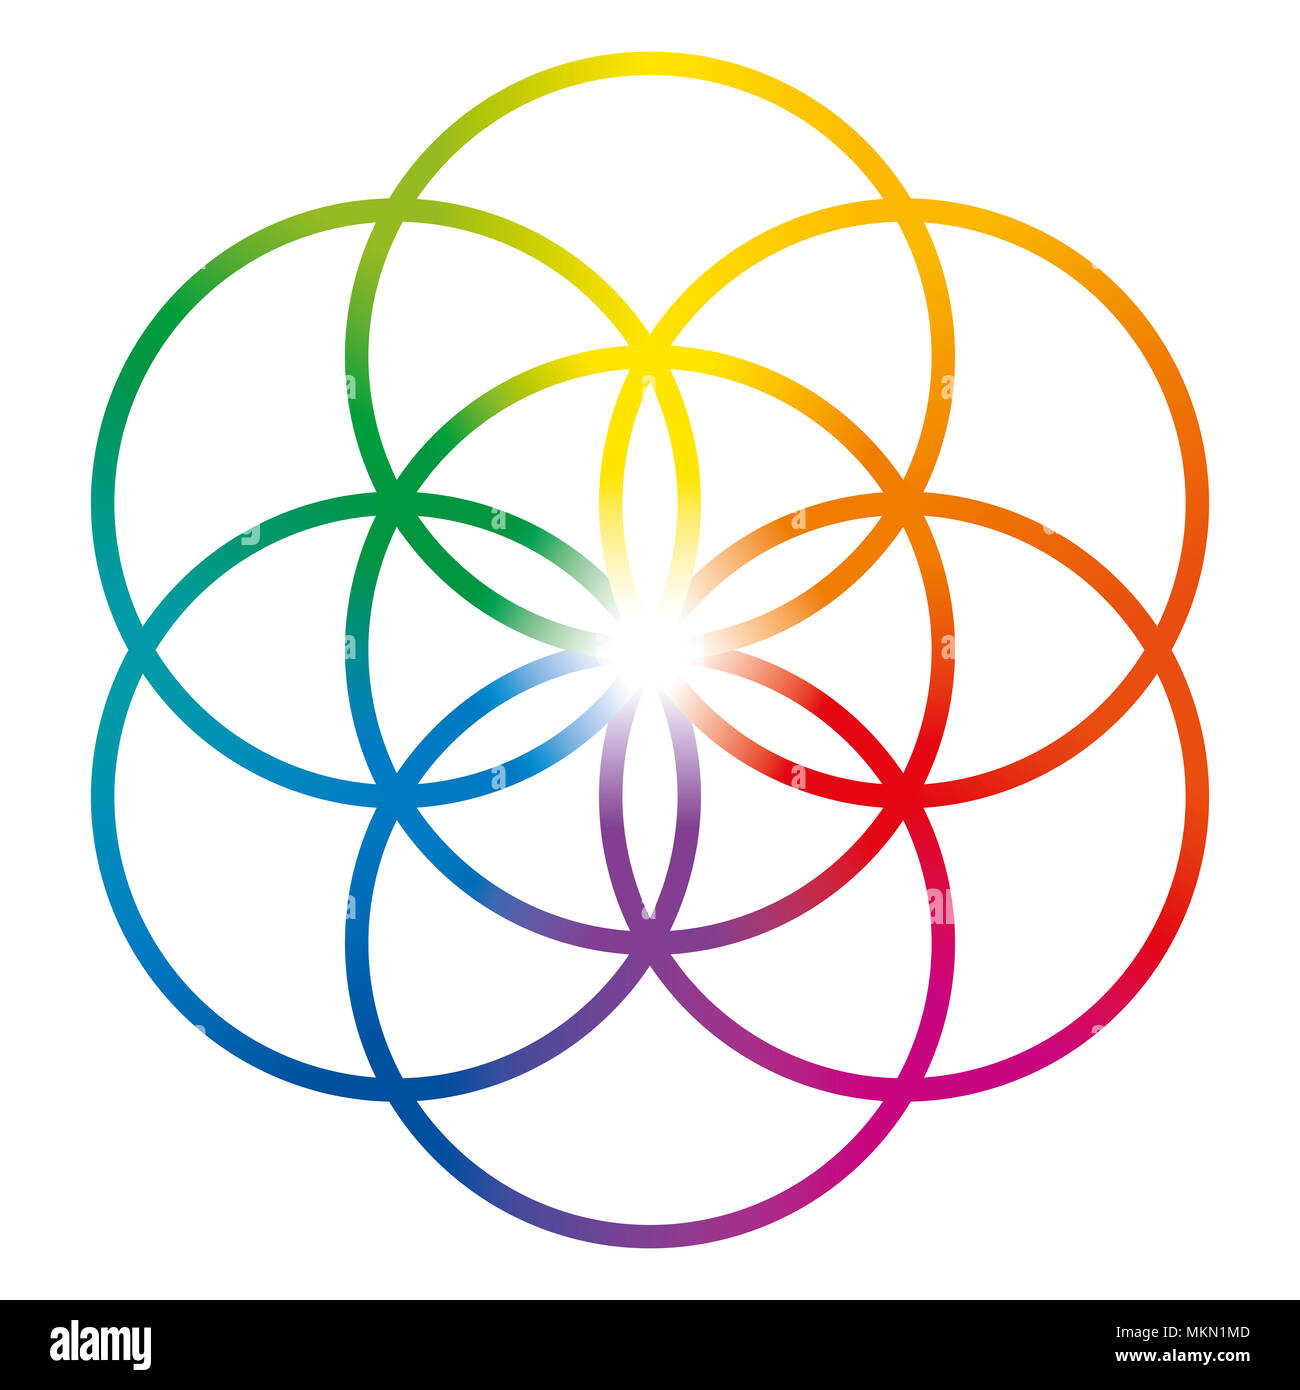 Seme di vita nei colori dell'arcobaleno. Figura geometrica, composto da sette cerchi sovrapposti della stessa dimensione, formando un esagono. Foto Stock